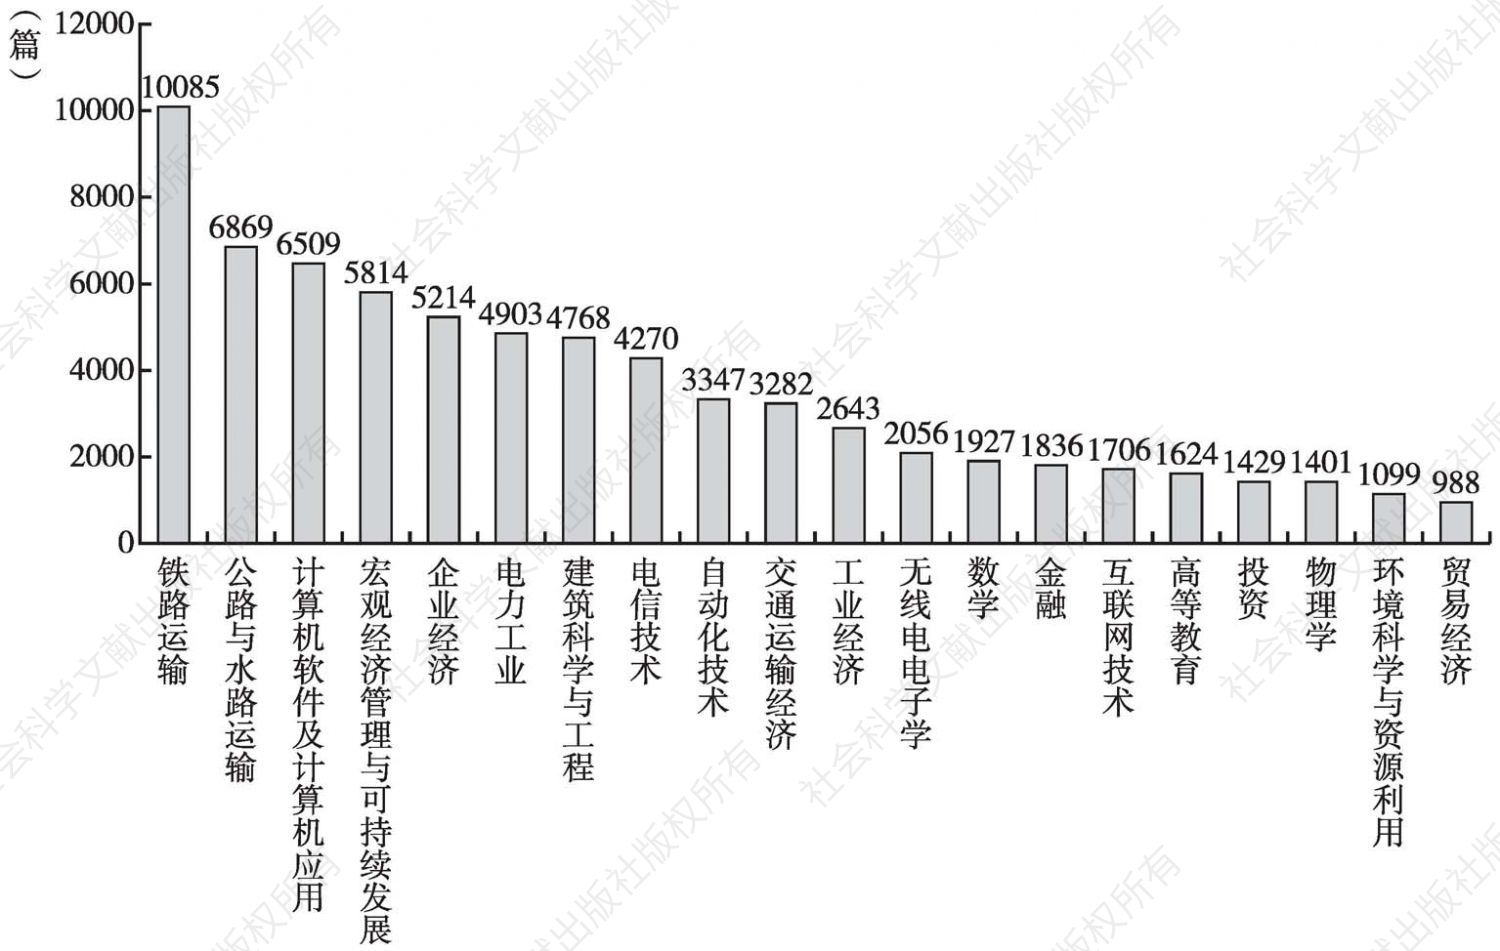 图3-15 北京交通大学发表文献的学科分布